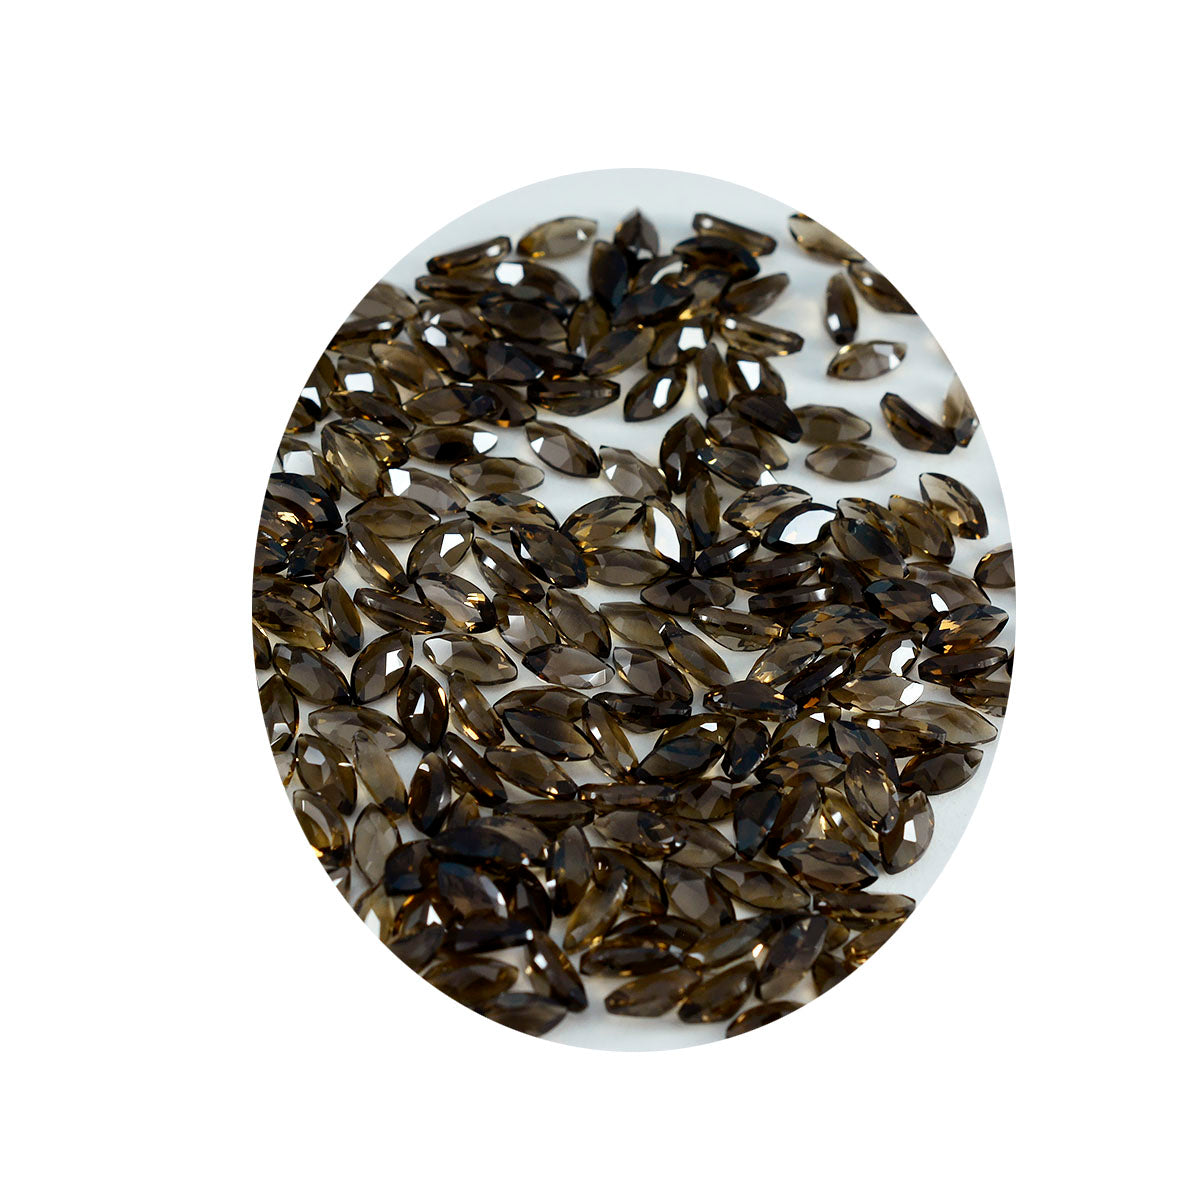 riyogems 1 шт. натуральный коричневый дымчатый кварц ограненный 2x4 мм форма маркиза A + 1 качество свободный драгоценный камень